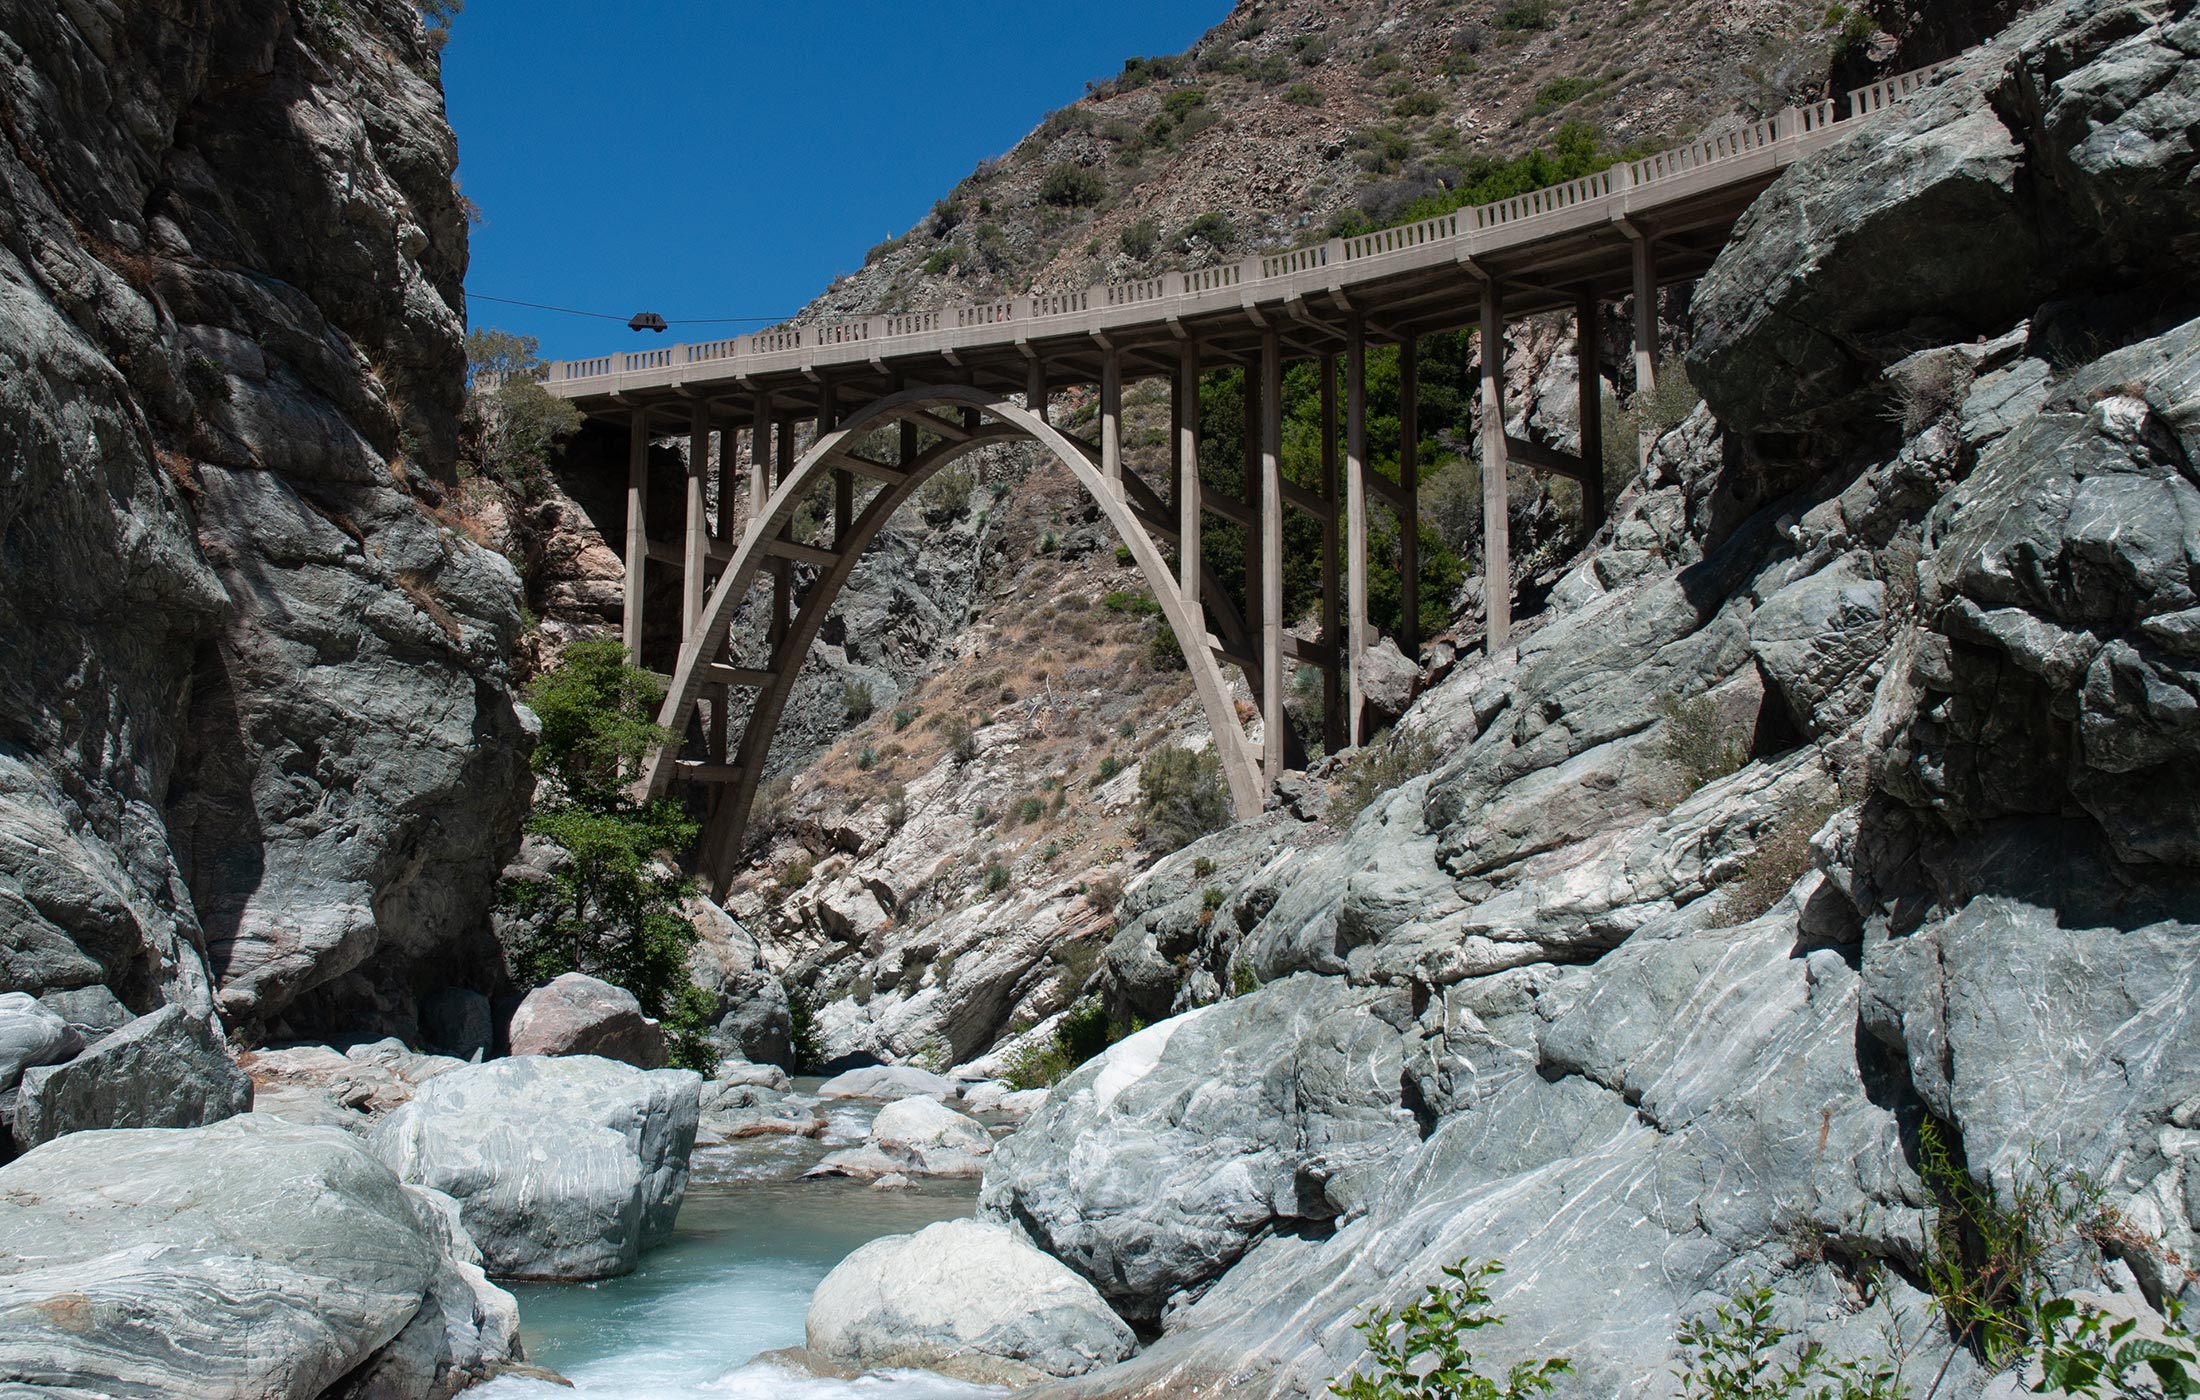 San Gabriel Canyon - The Bridge to Nowhere